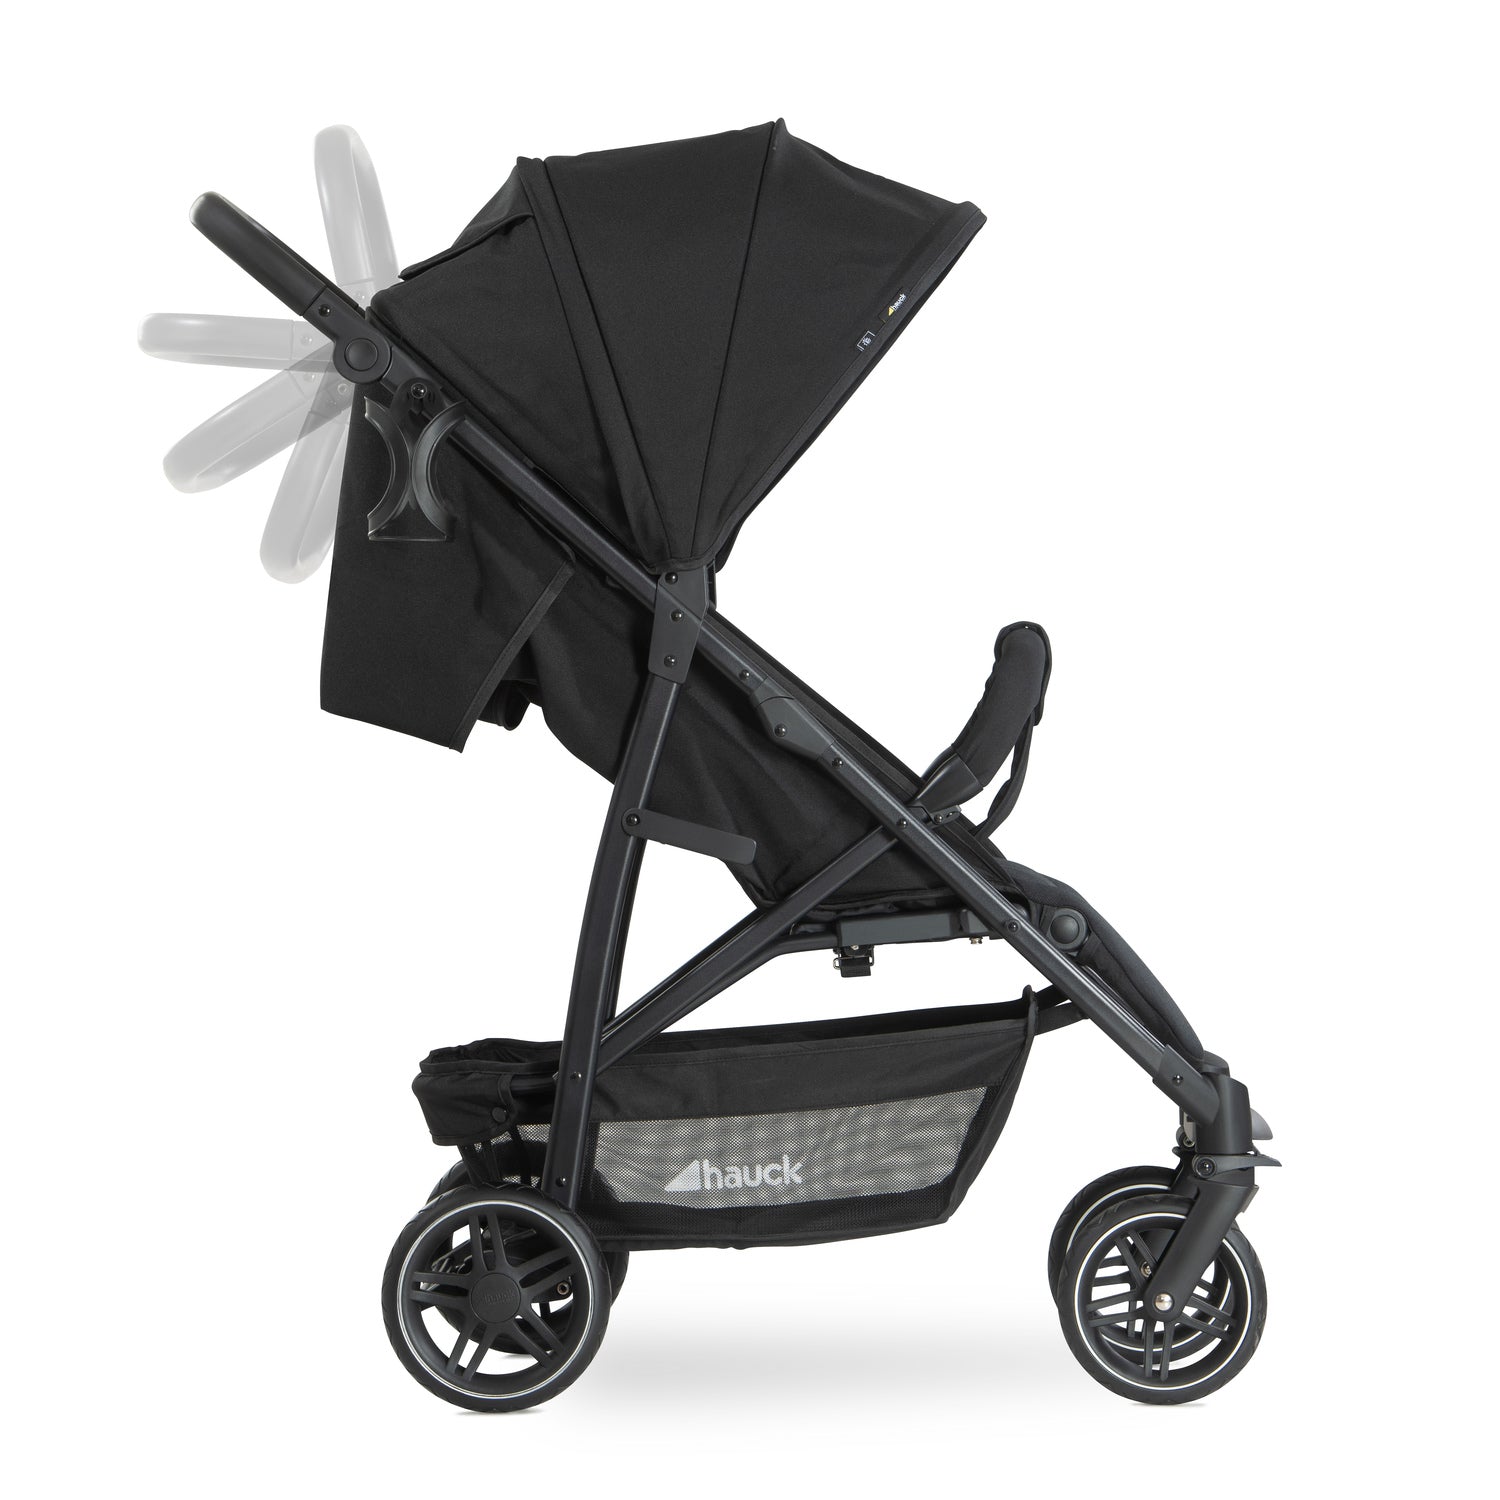 hauck rapid 4r stroller black adjustable handle